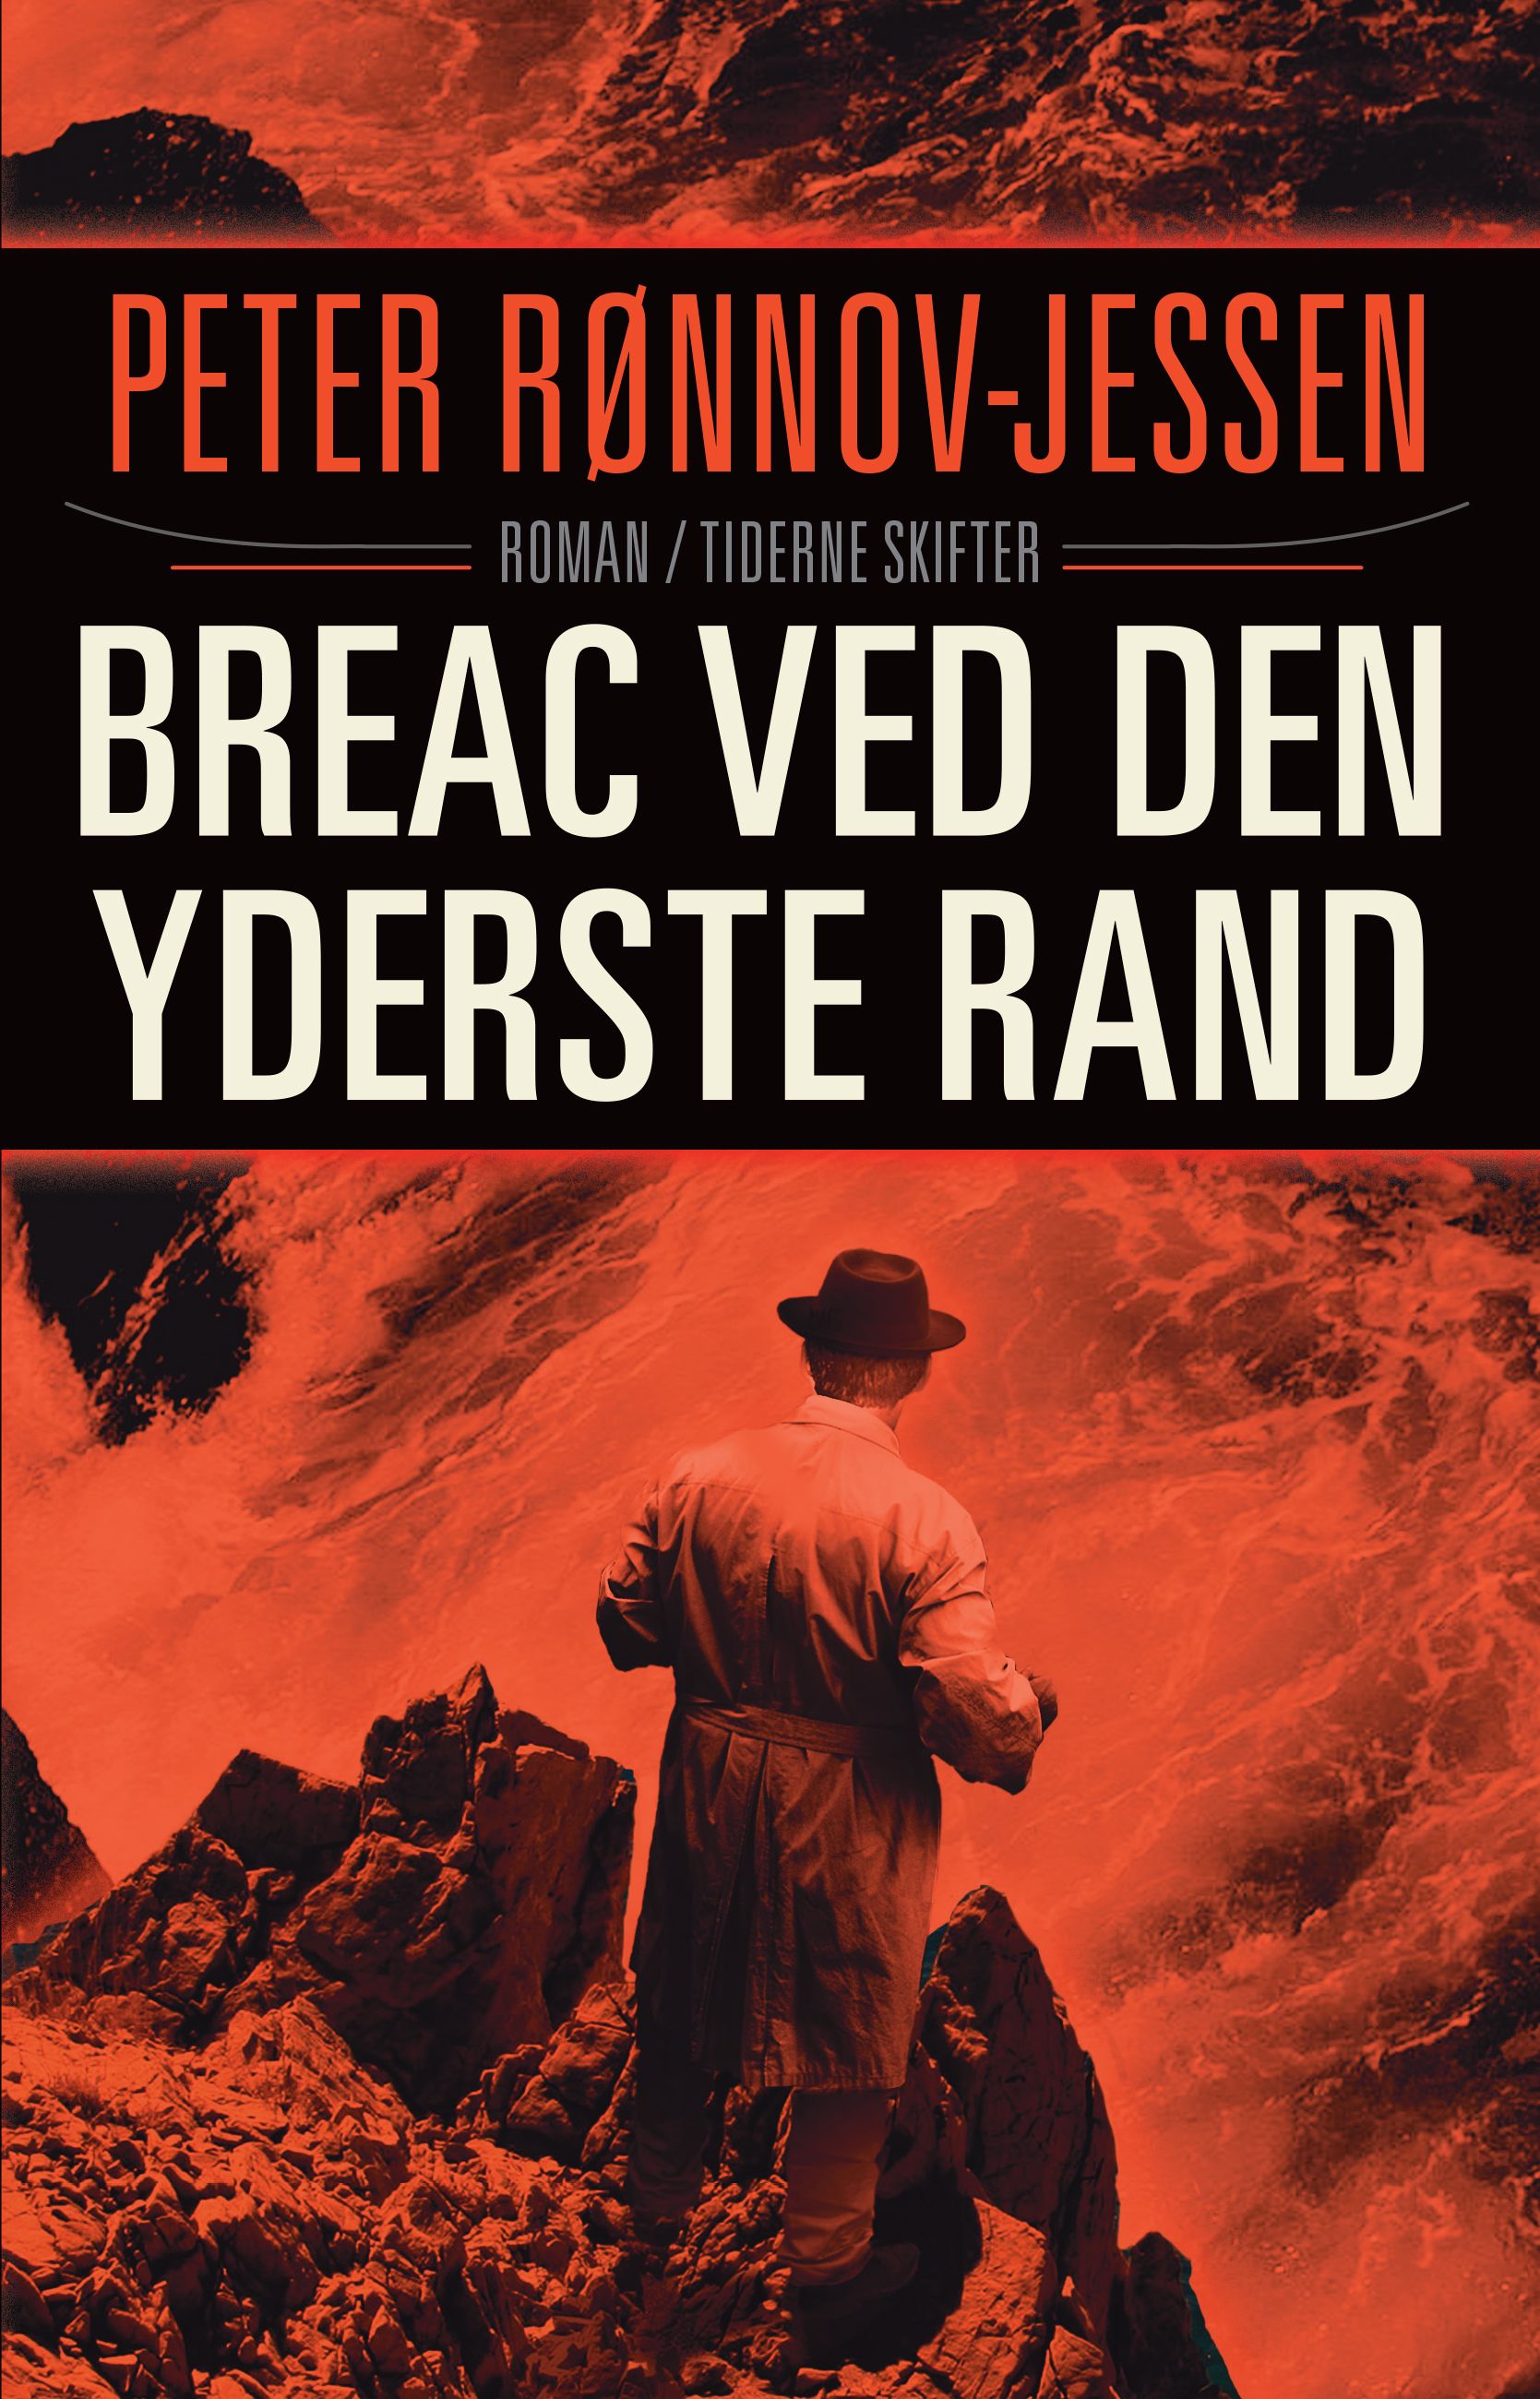 Bréac ved den yderst rand, e-bok av PETER RØNNOV-JESSEN